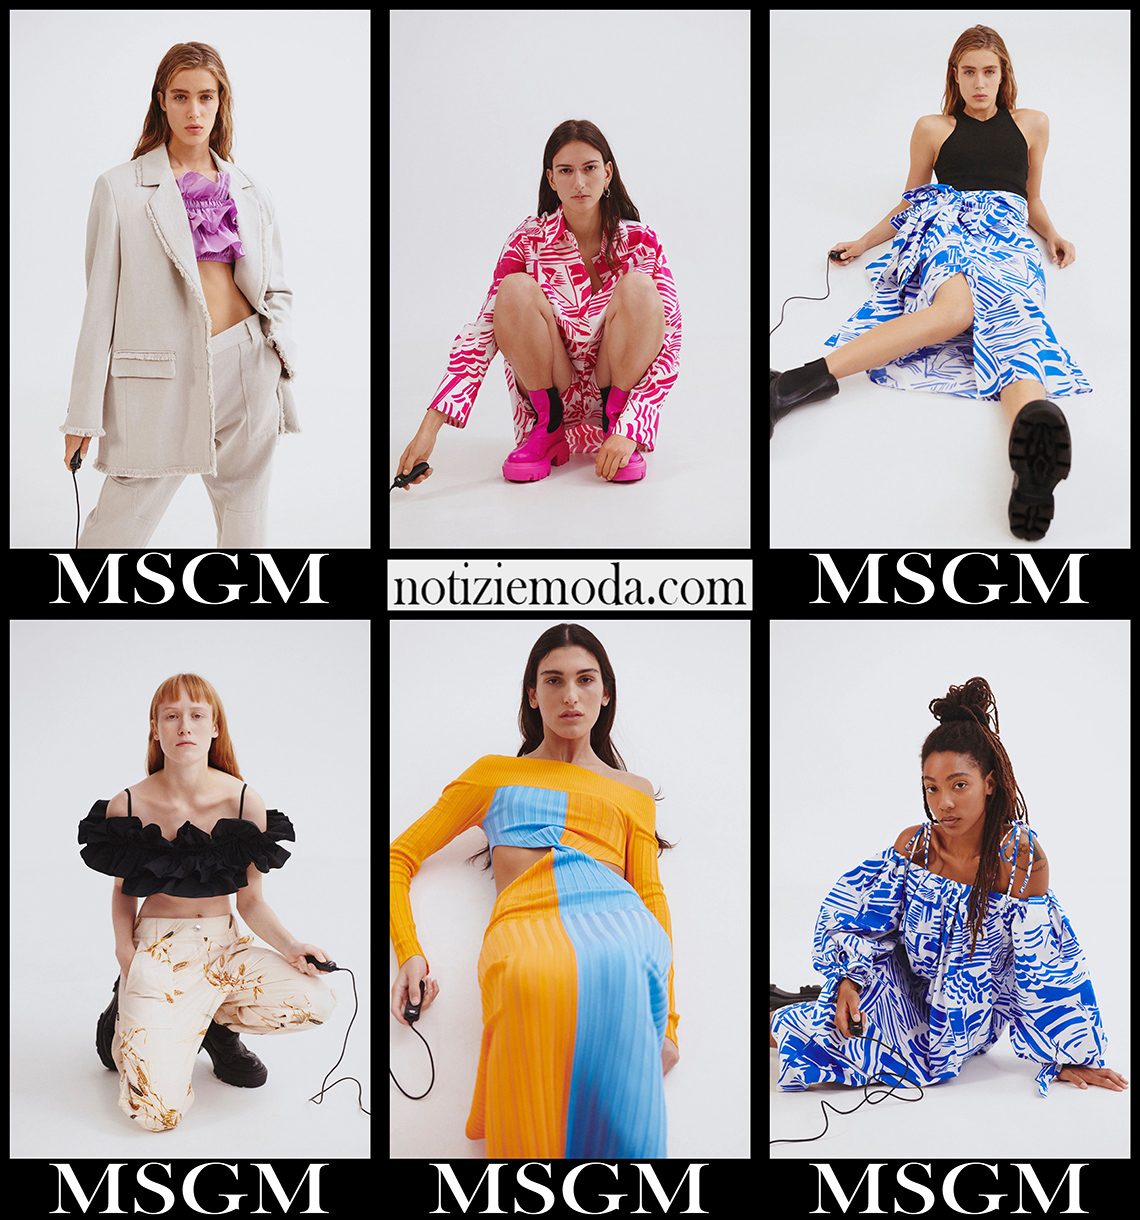 Collezione MSGM primavera estate 2021 moda donna